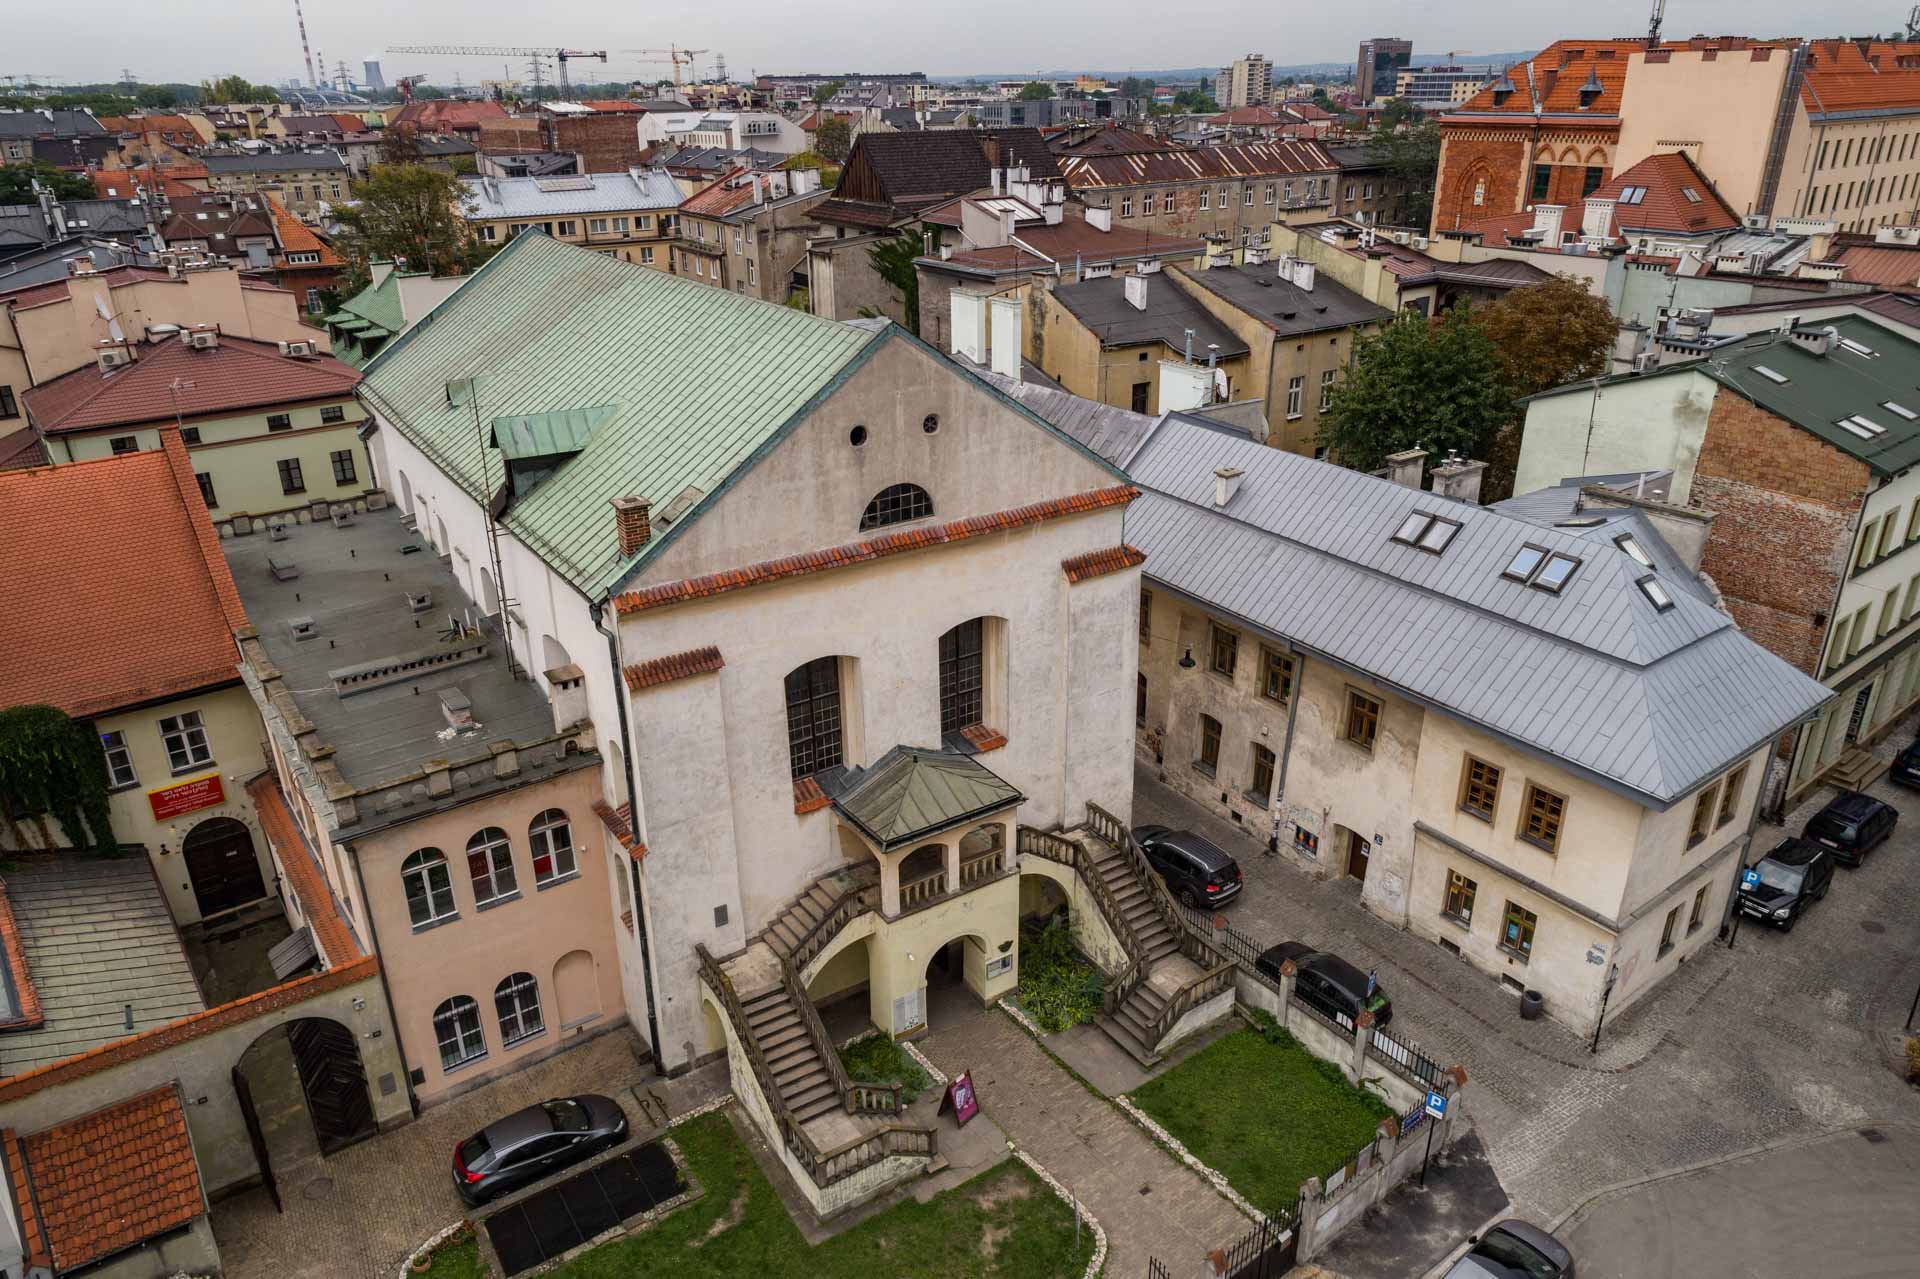 Synagoga Izaaka w Krakowie